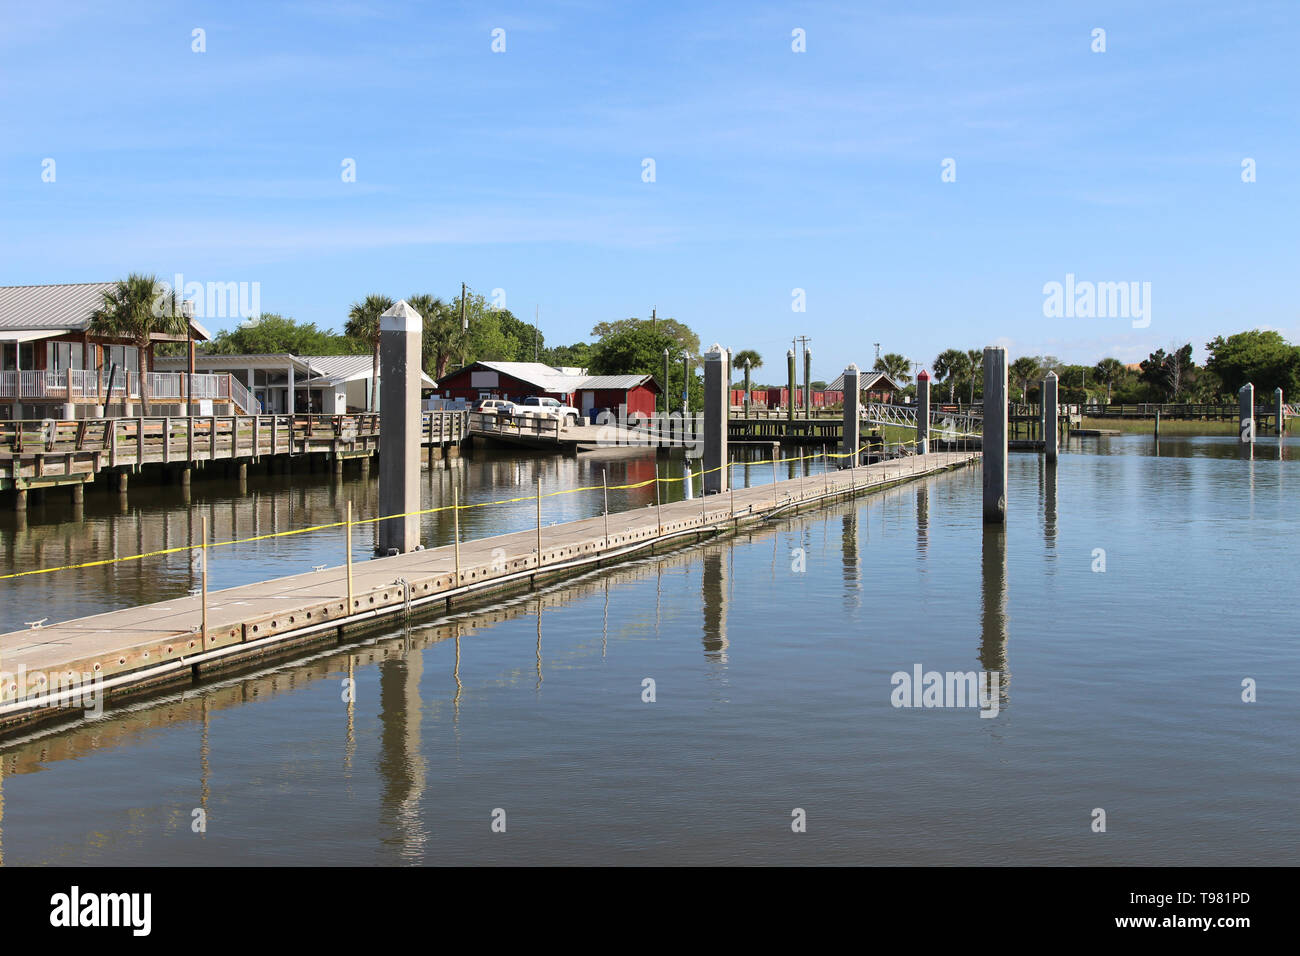 Le front de mer, dans le quartier historique de l'île d'Amelia (vieille ville), Fernandina Beach, Florida, USA Banque D'Images